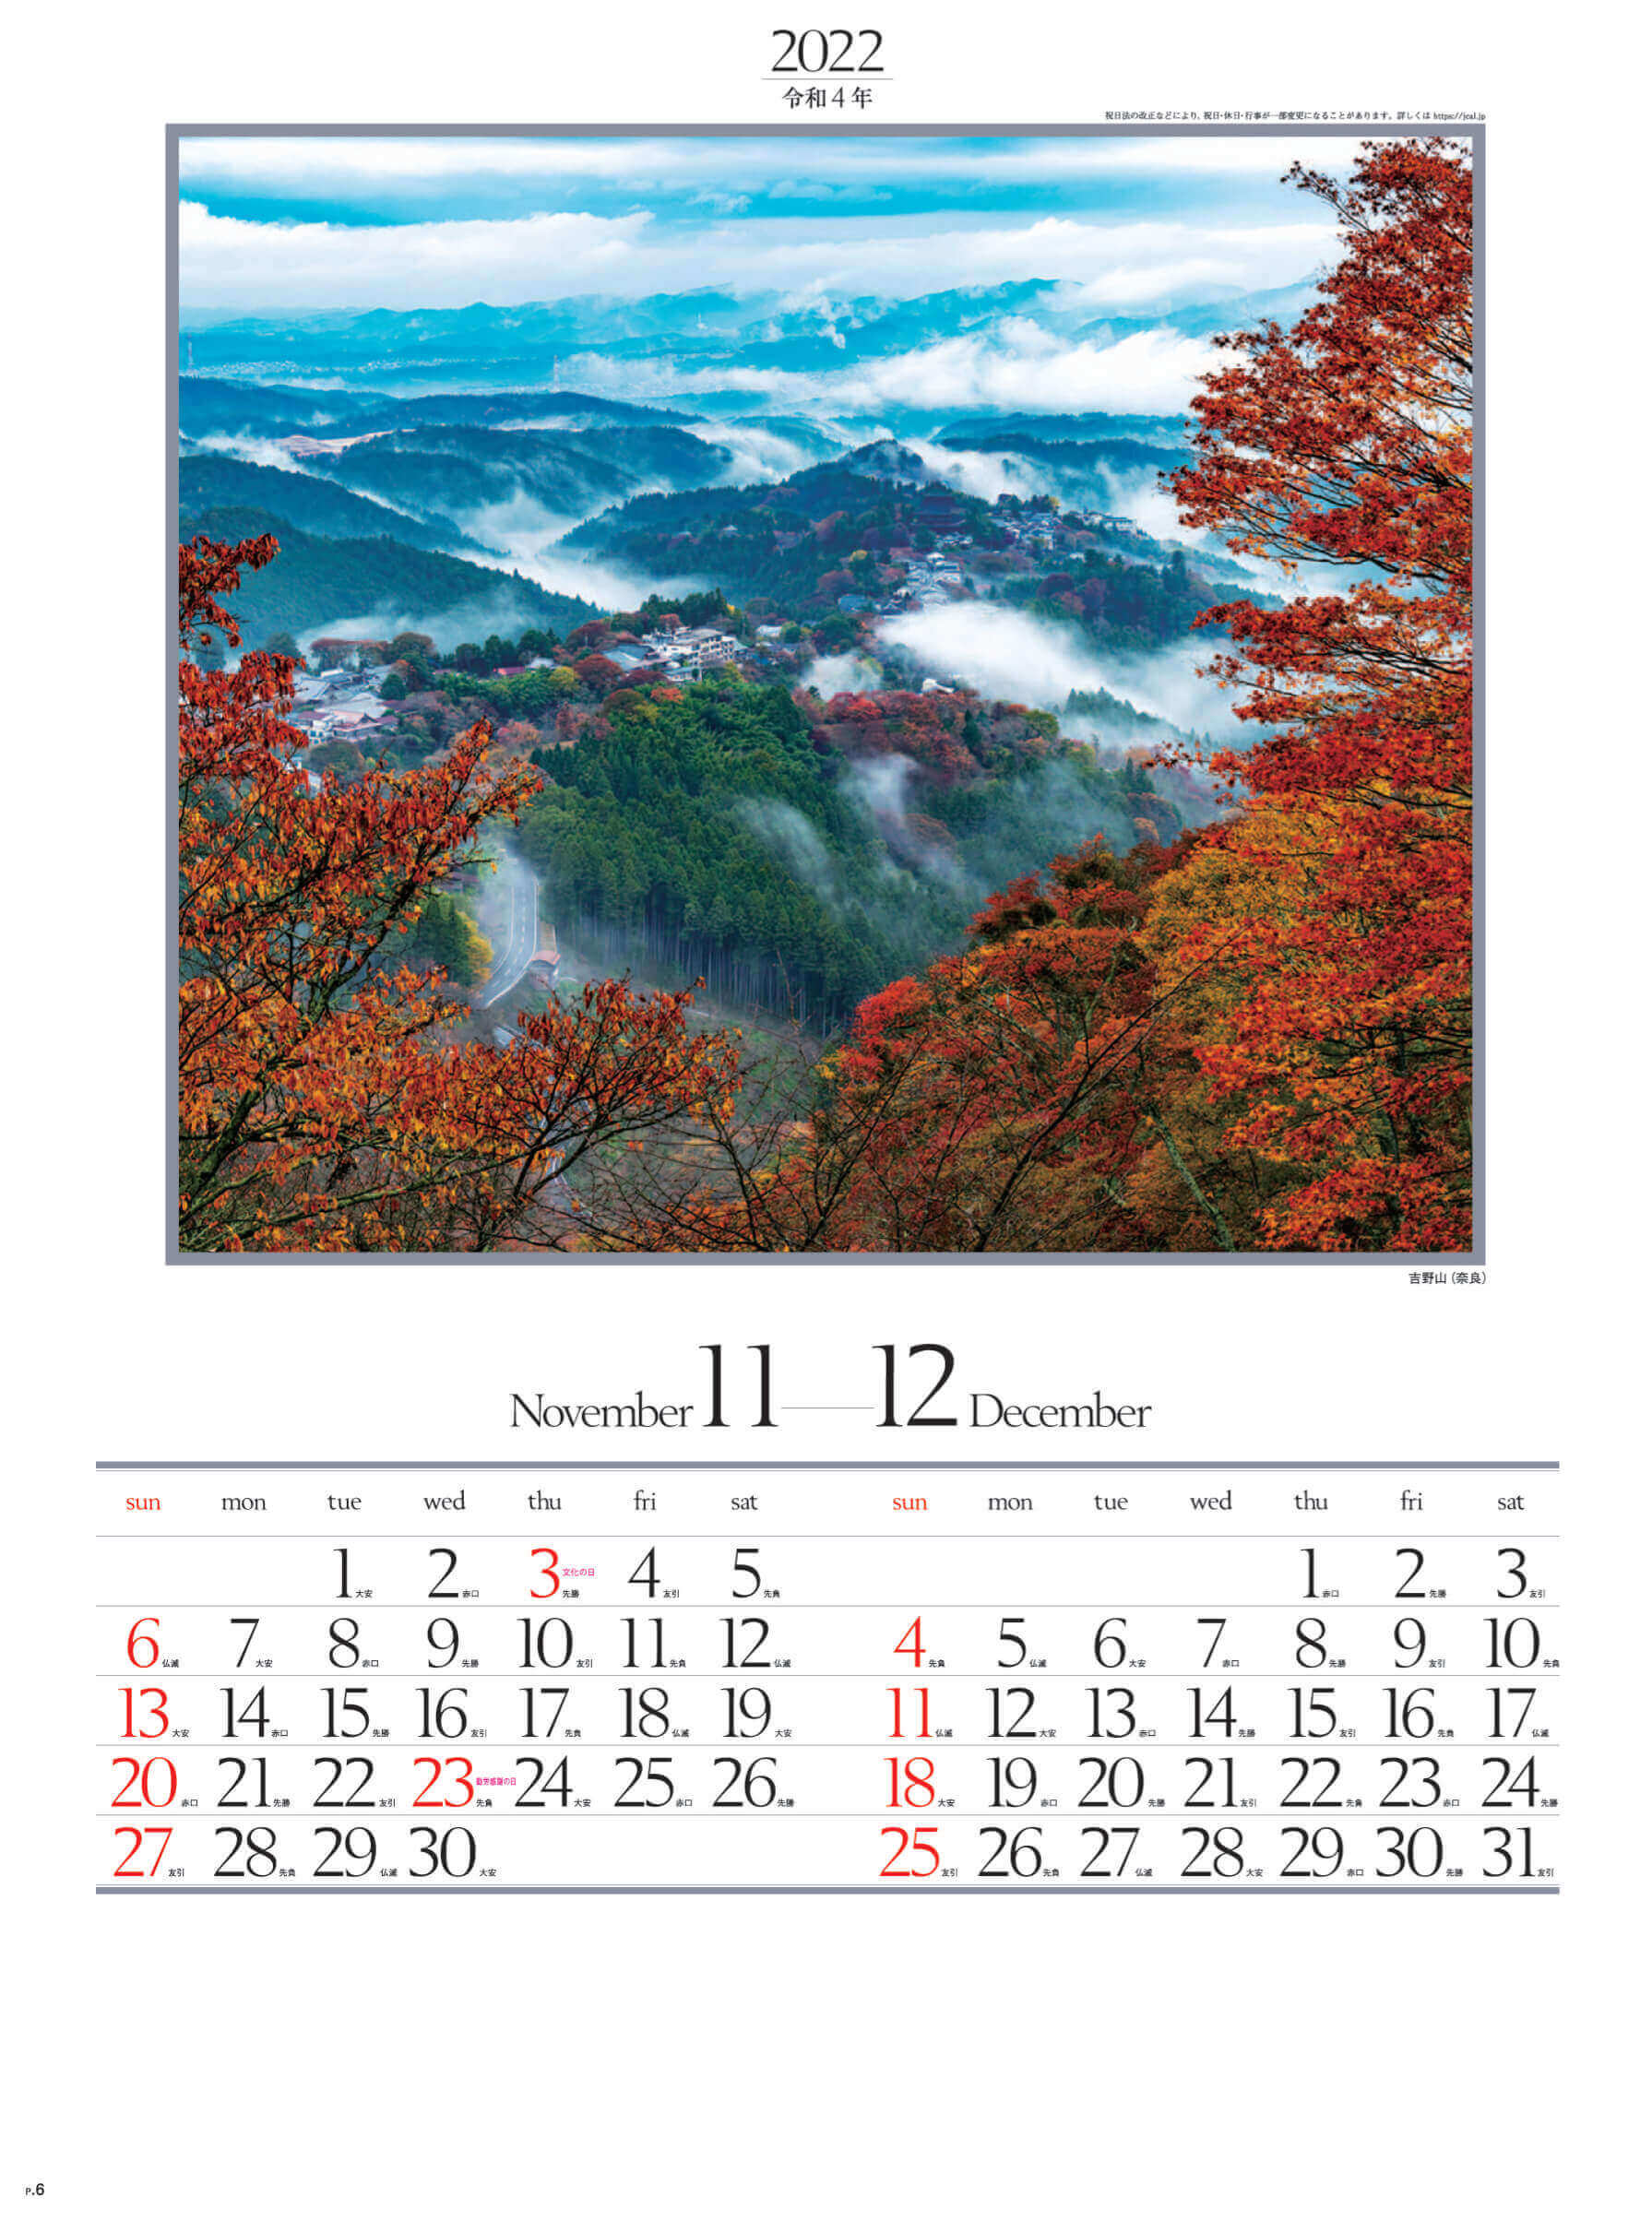 11-12月 吉野山(奈良) 四季六彩 2022年カレンダーの画像